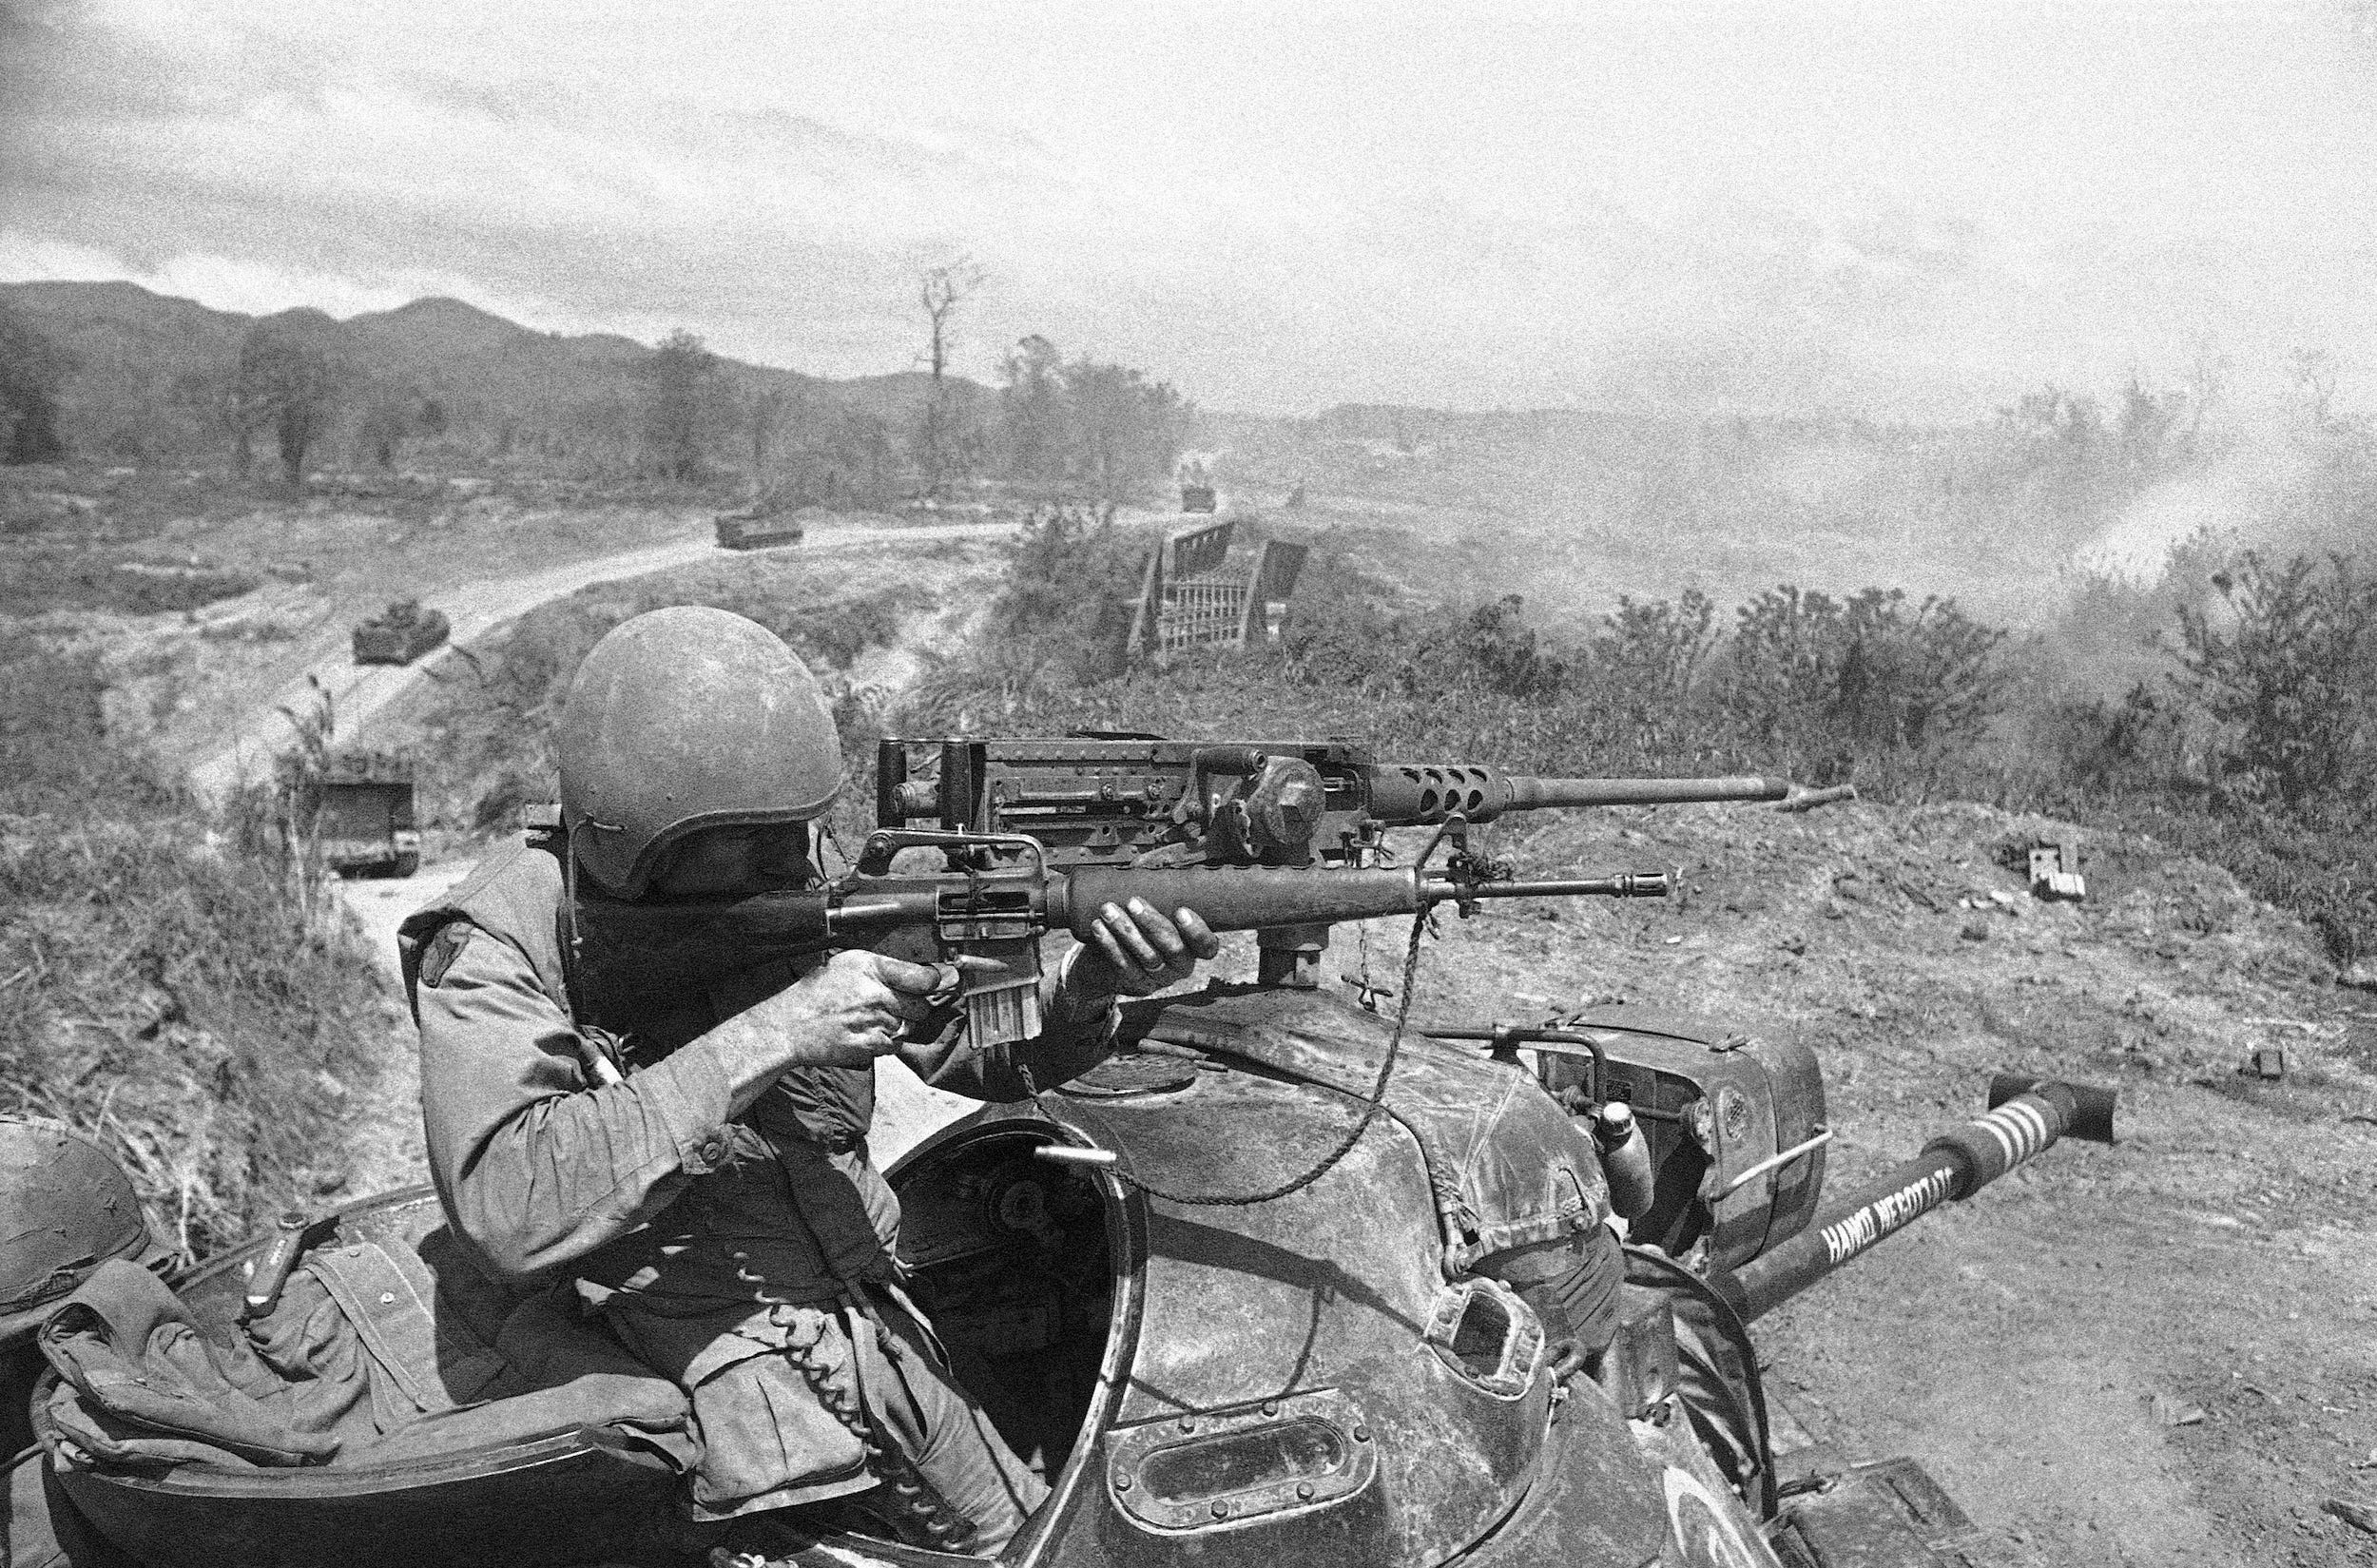 Ein Soldat nutzt seine M16 während einer Schlacht im Vietnamkrieg im Jahr 1971.